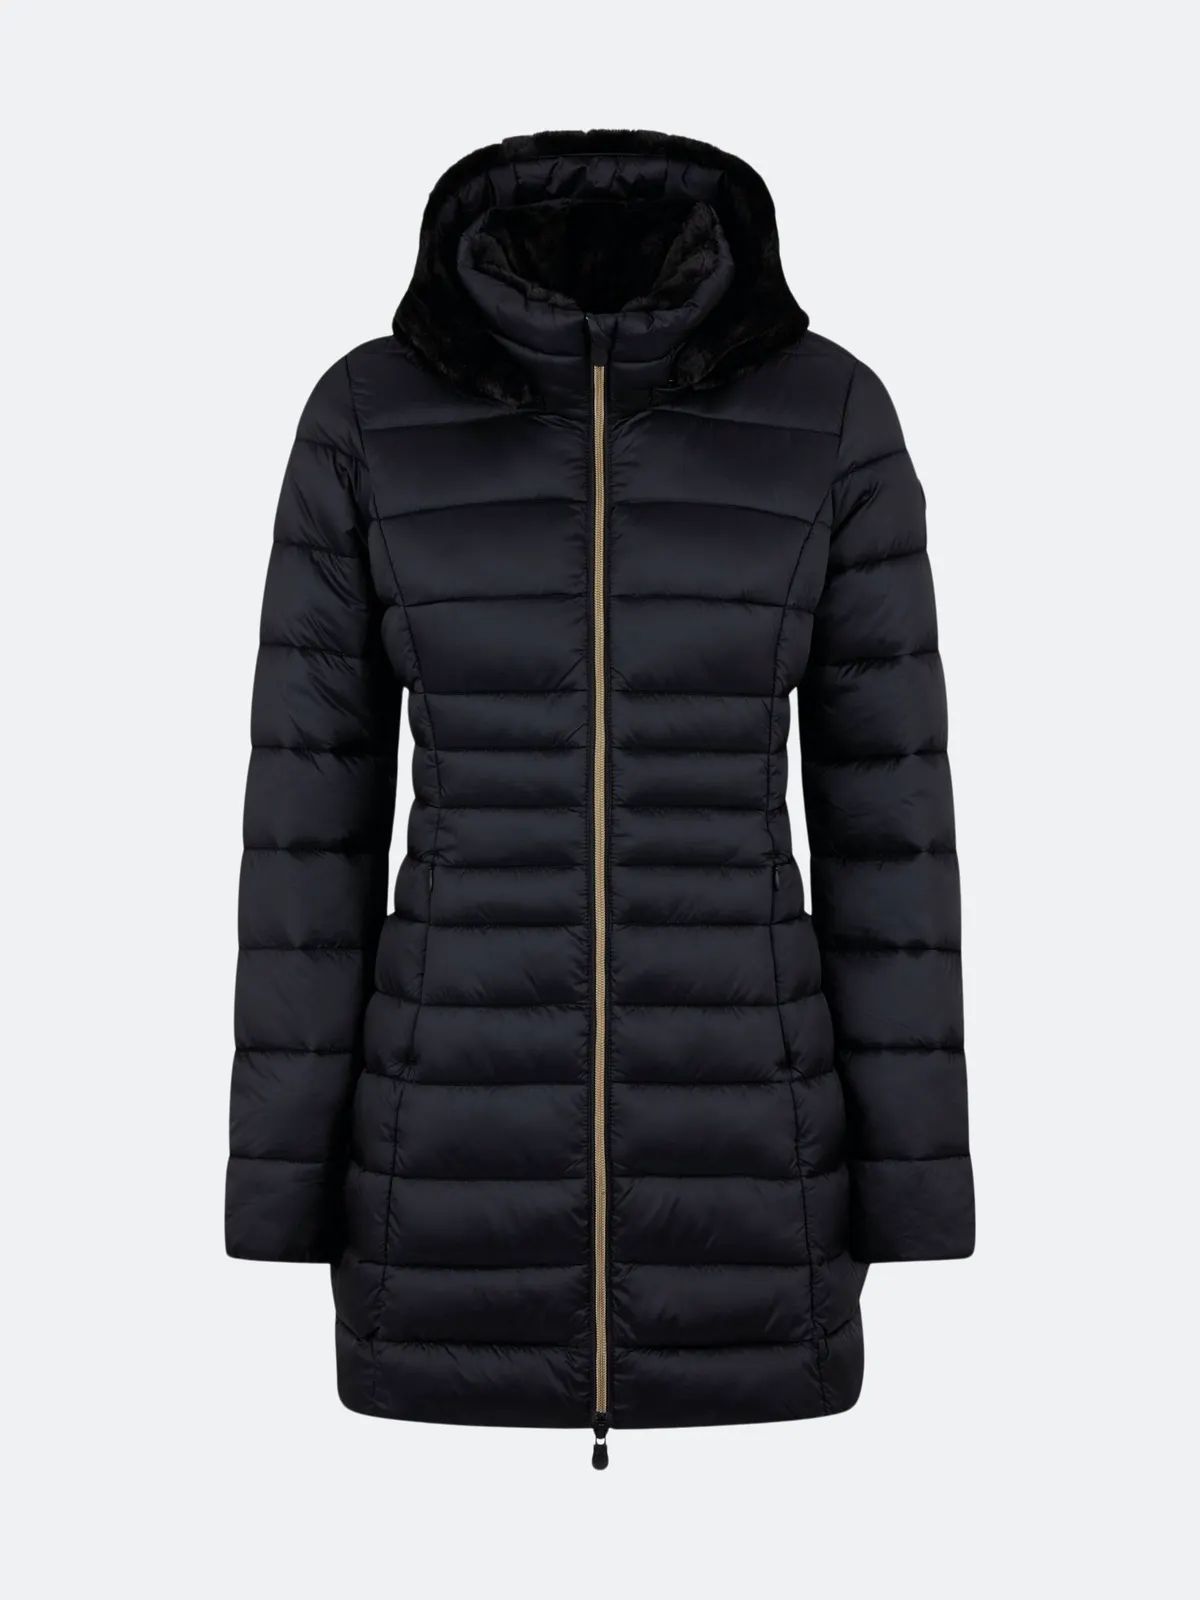 Women's Maylin Coat with Detachable Faux Fur Lined Hood | Verishop